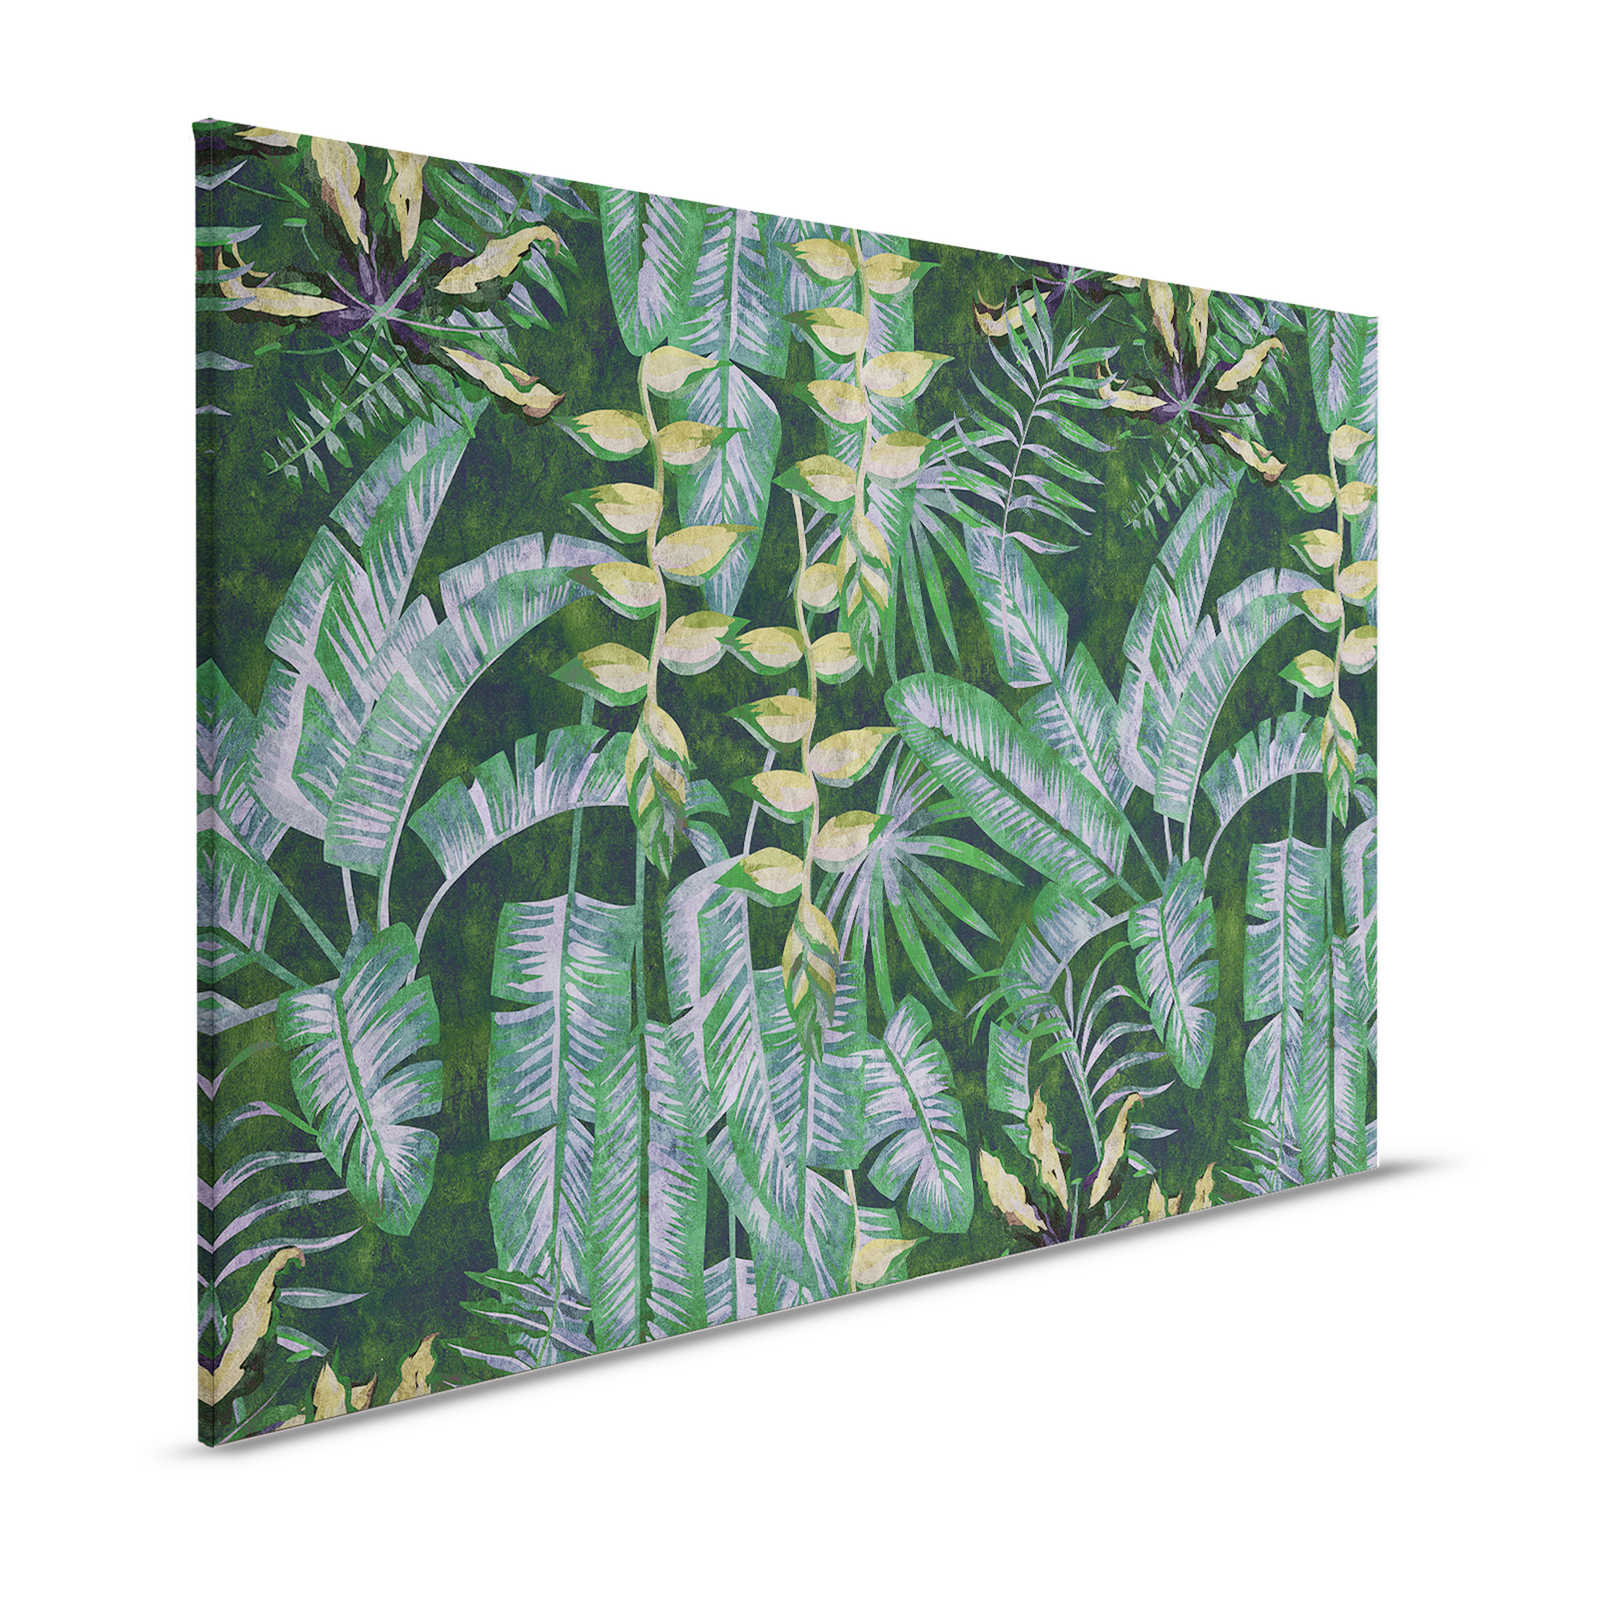 Tropicana 2 - Quadro su tela con piante tropicali - 1,20 m x 0,80 m
